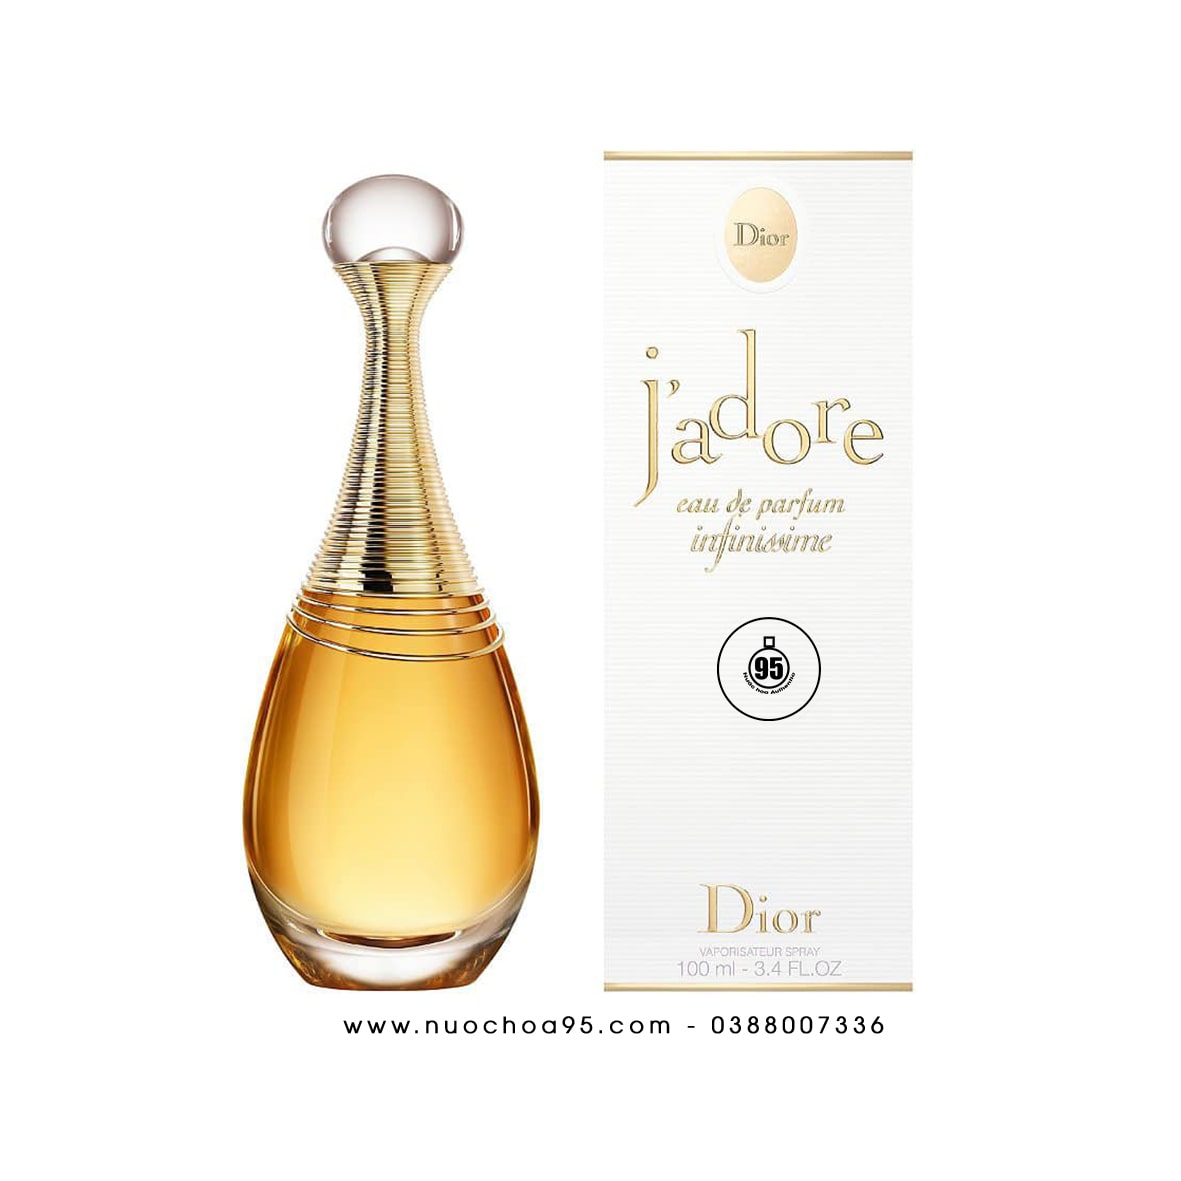 Nước hoa Dior J'Adore Eau De Parfum Infinissime